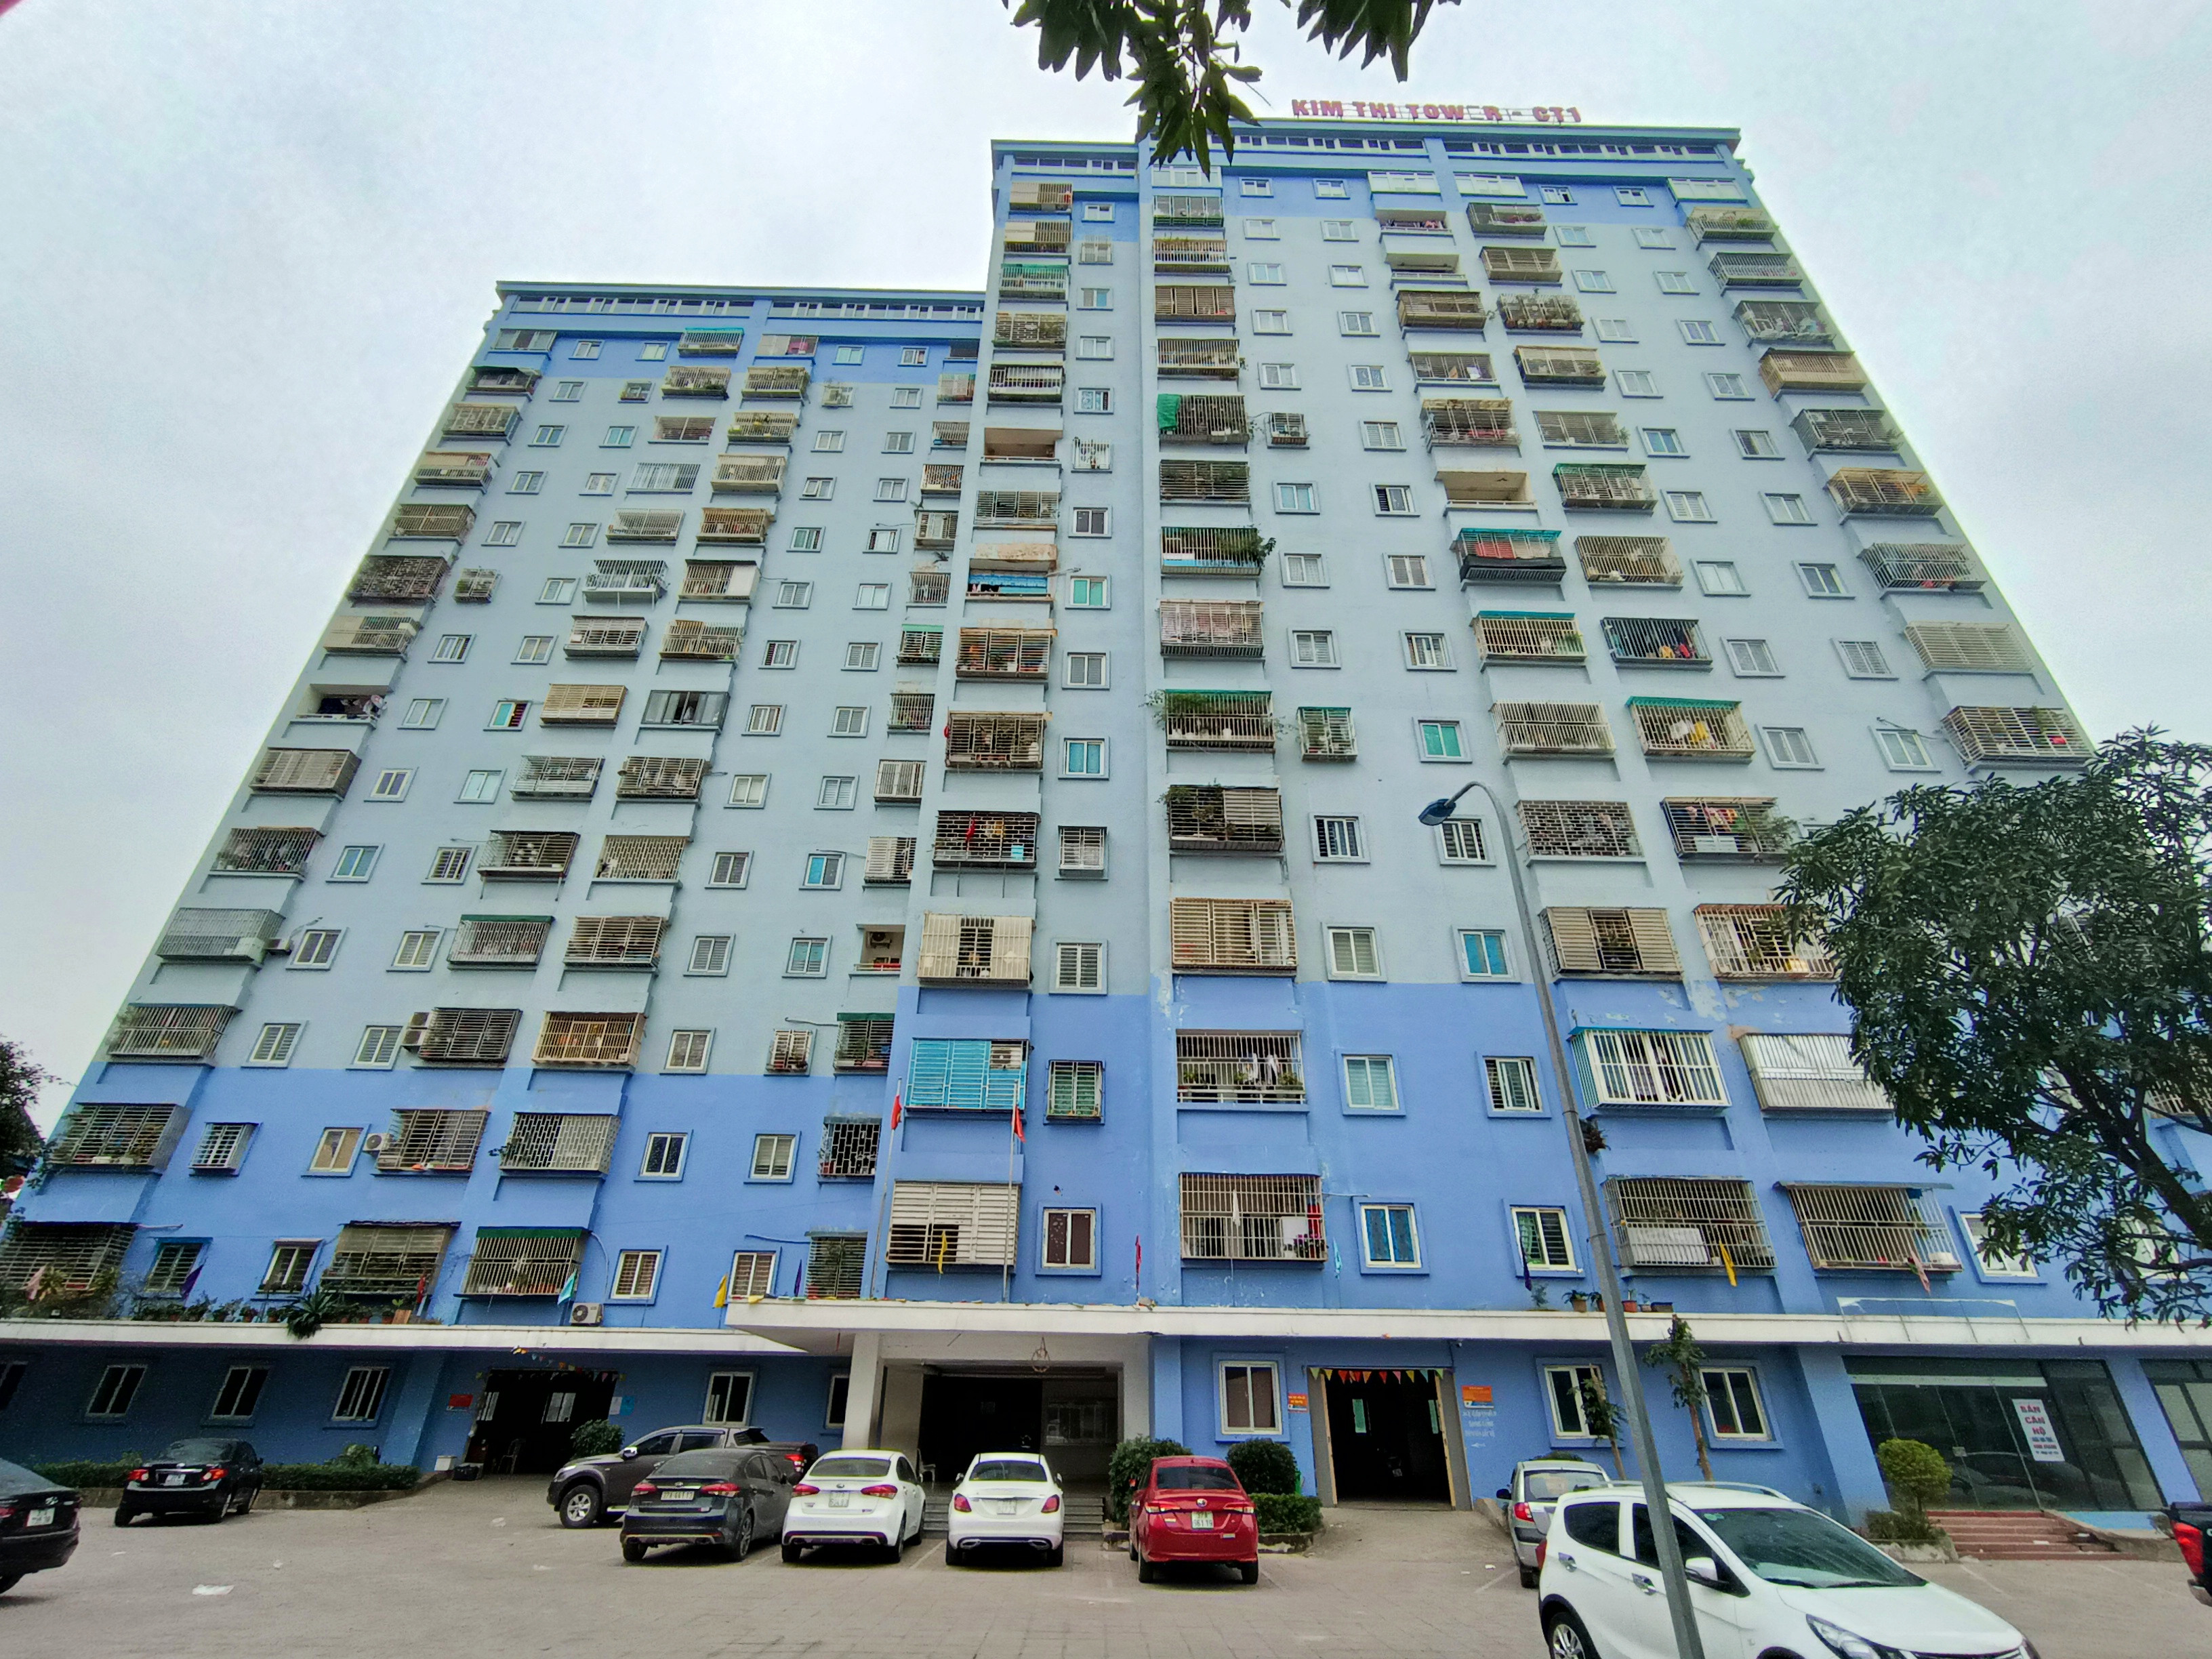 Tòa nhà CT1 - Chung cư Kim Thi nằm trên địa bàn phường Quán Bàu, cũng là nơi xuất hiện nhiều 